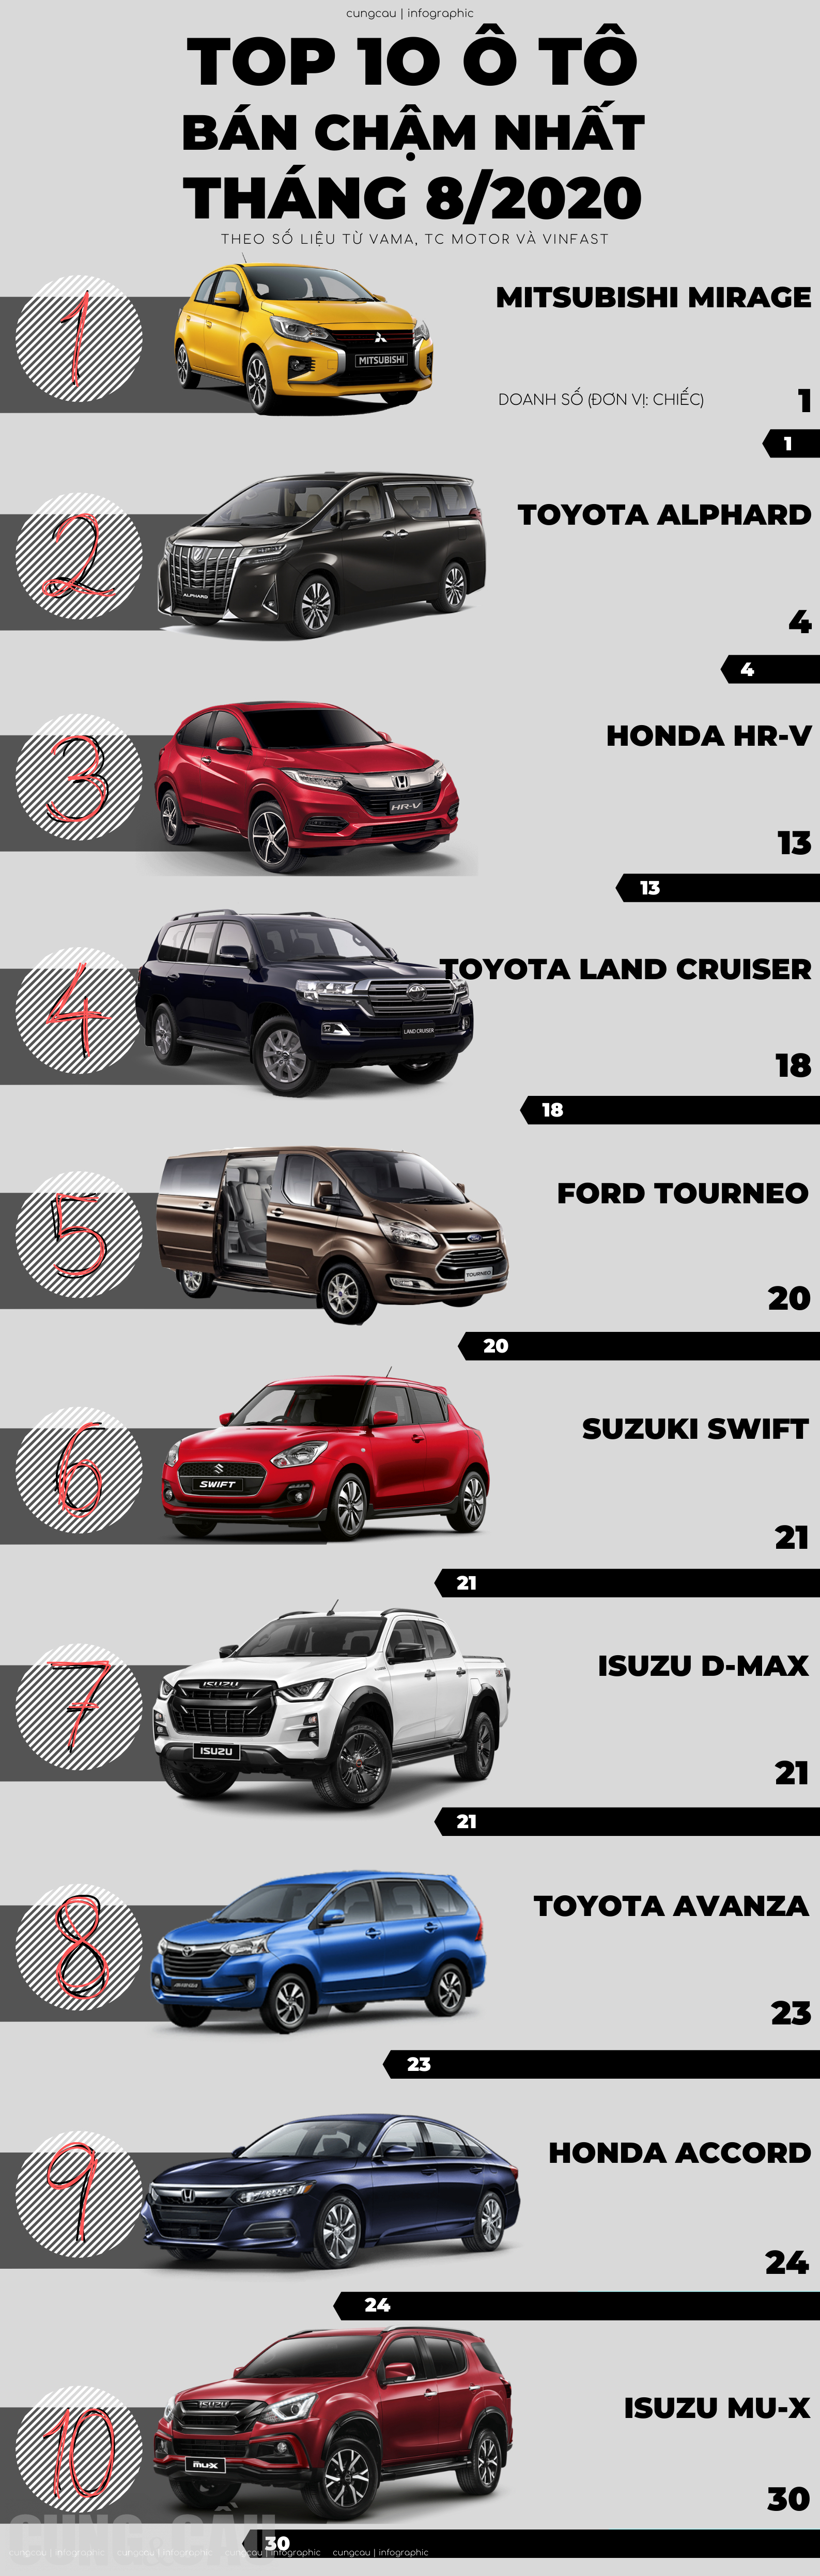 Top 10 ô tô bán ế nhất tháng 8/2020: Accord vẫn chưa thể khiến Honda 'nở mặt', Toyota có đến 4 đại diện